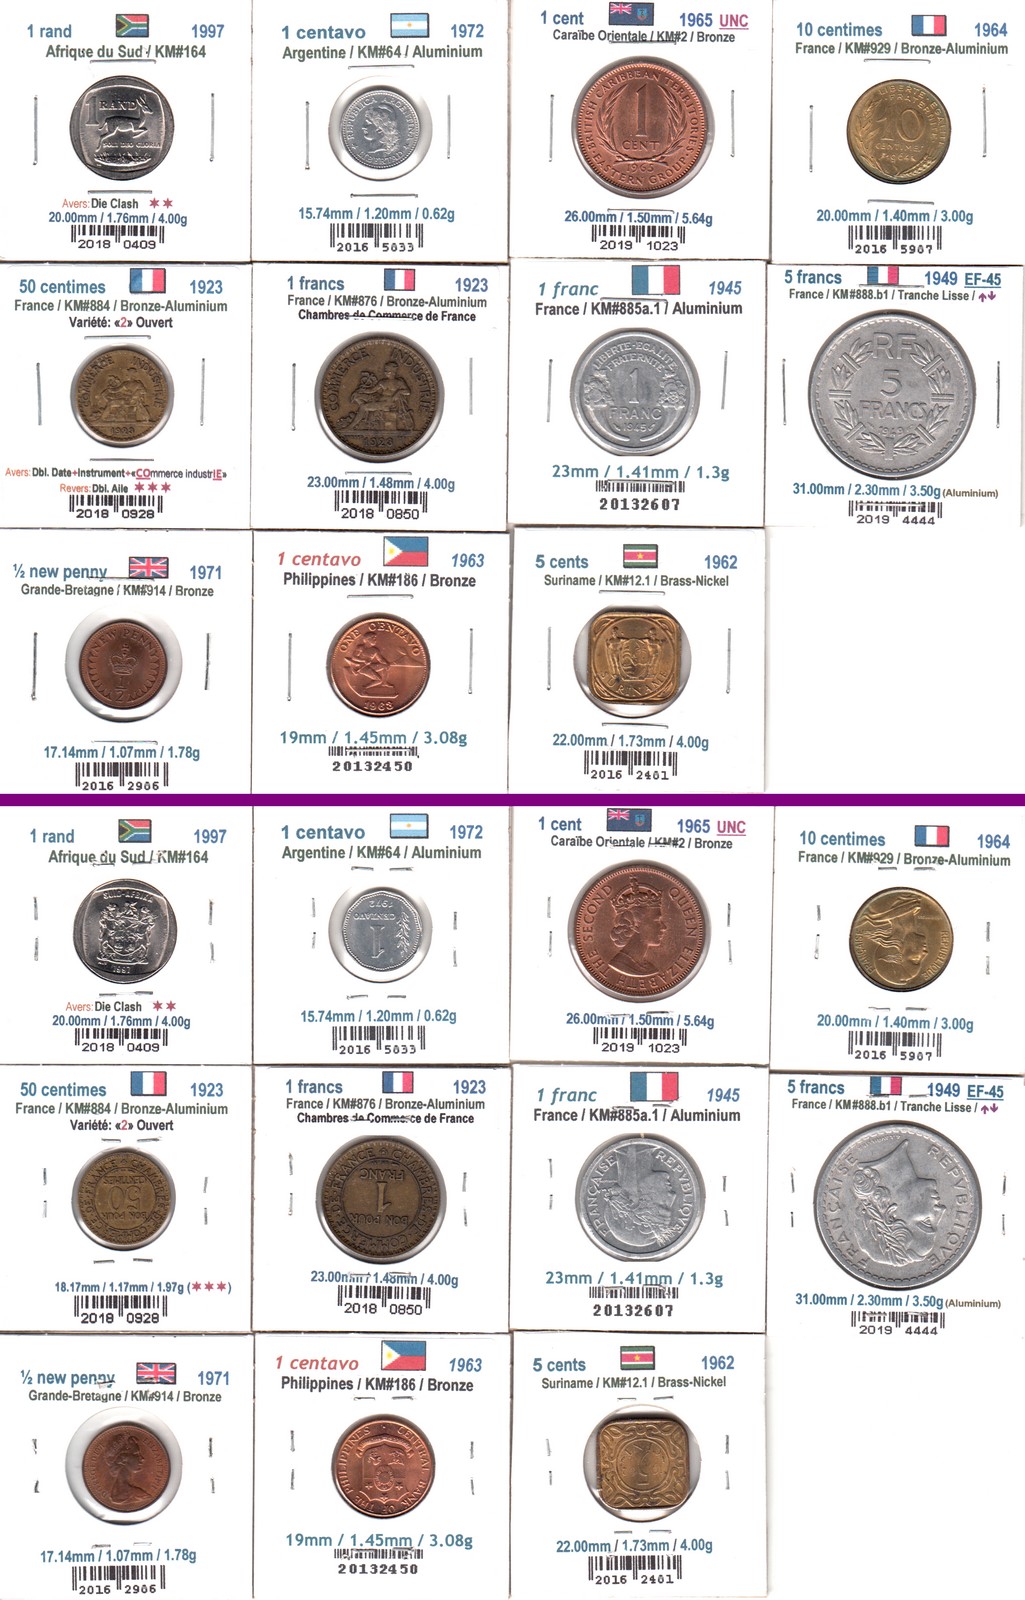 À Vendre - Lot 11 pièces du Monde (2021-02).jpg